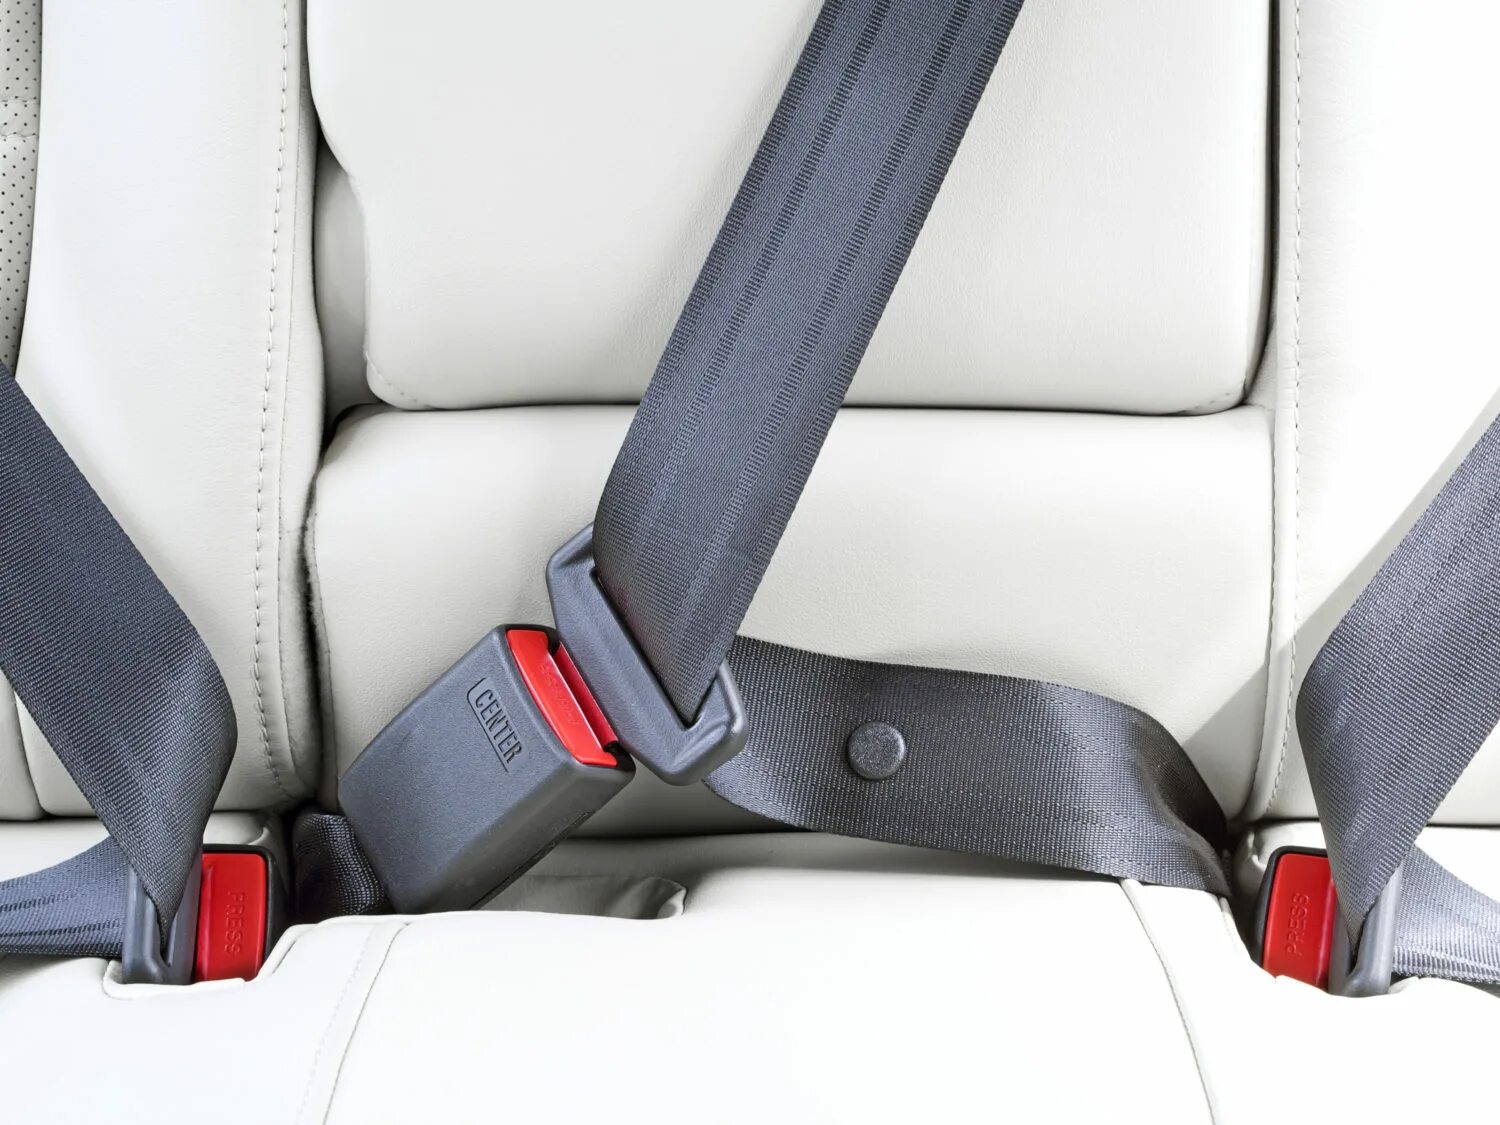 Ремнями безопасности должны быть оборудованы. Seat Belt, Safety 95.241-210. Wear a Seat Belt. VAG 8 гр., VW, Seat Belt. Ремни безопасности пассажиров задних рядов т4.